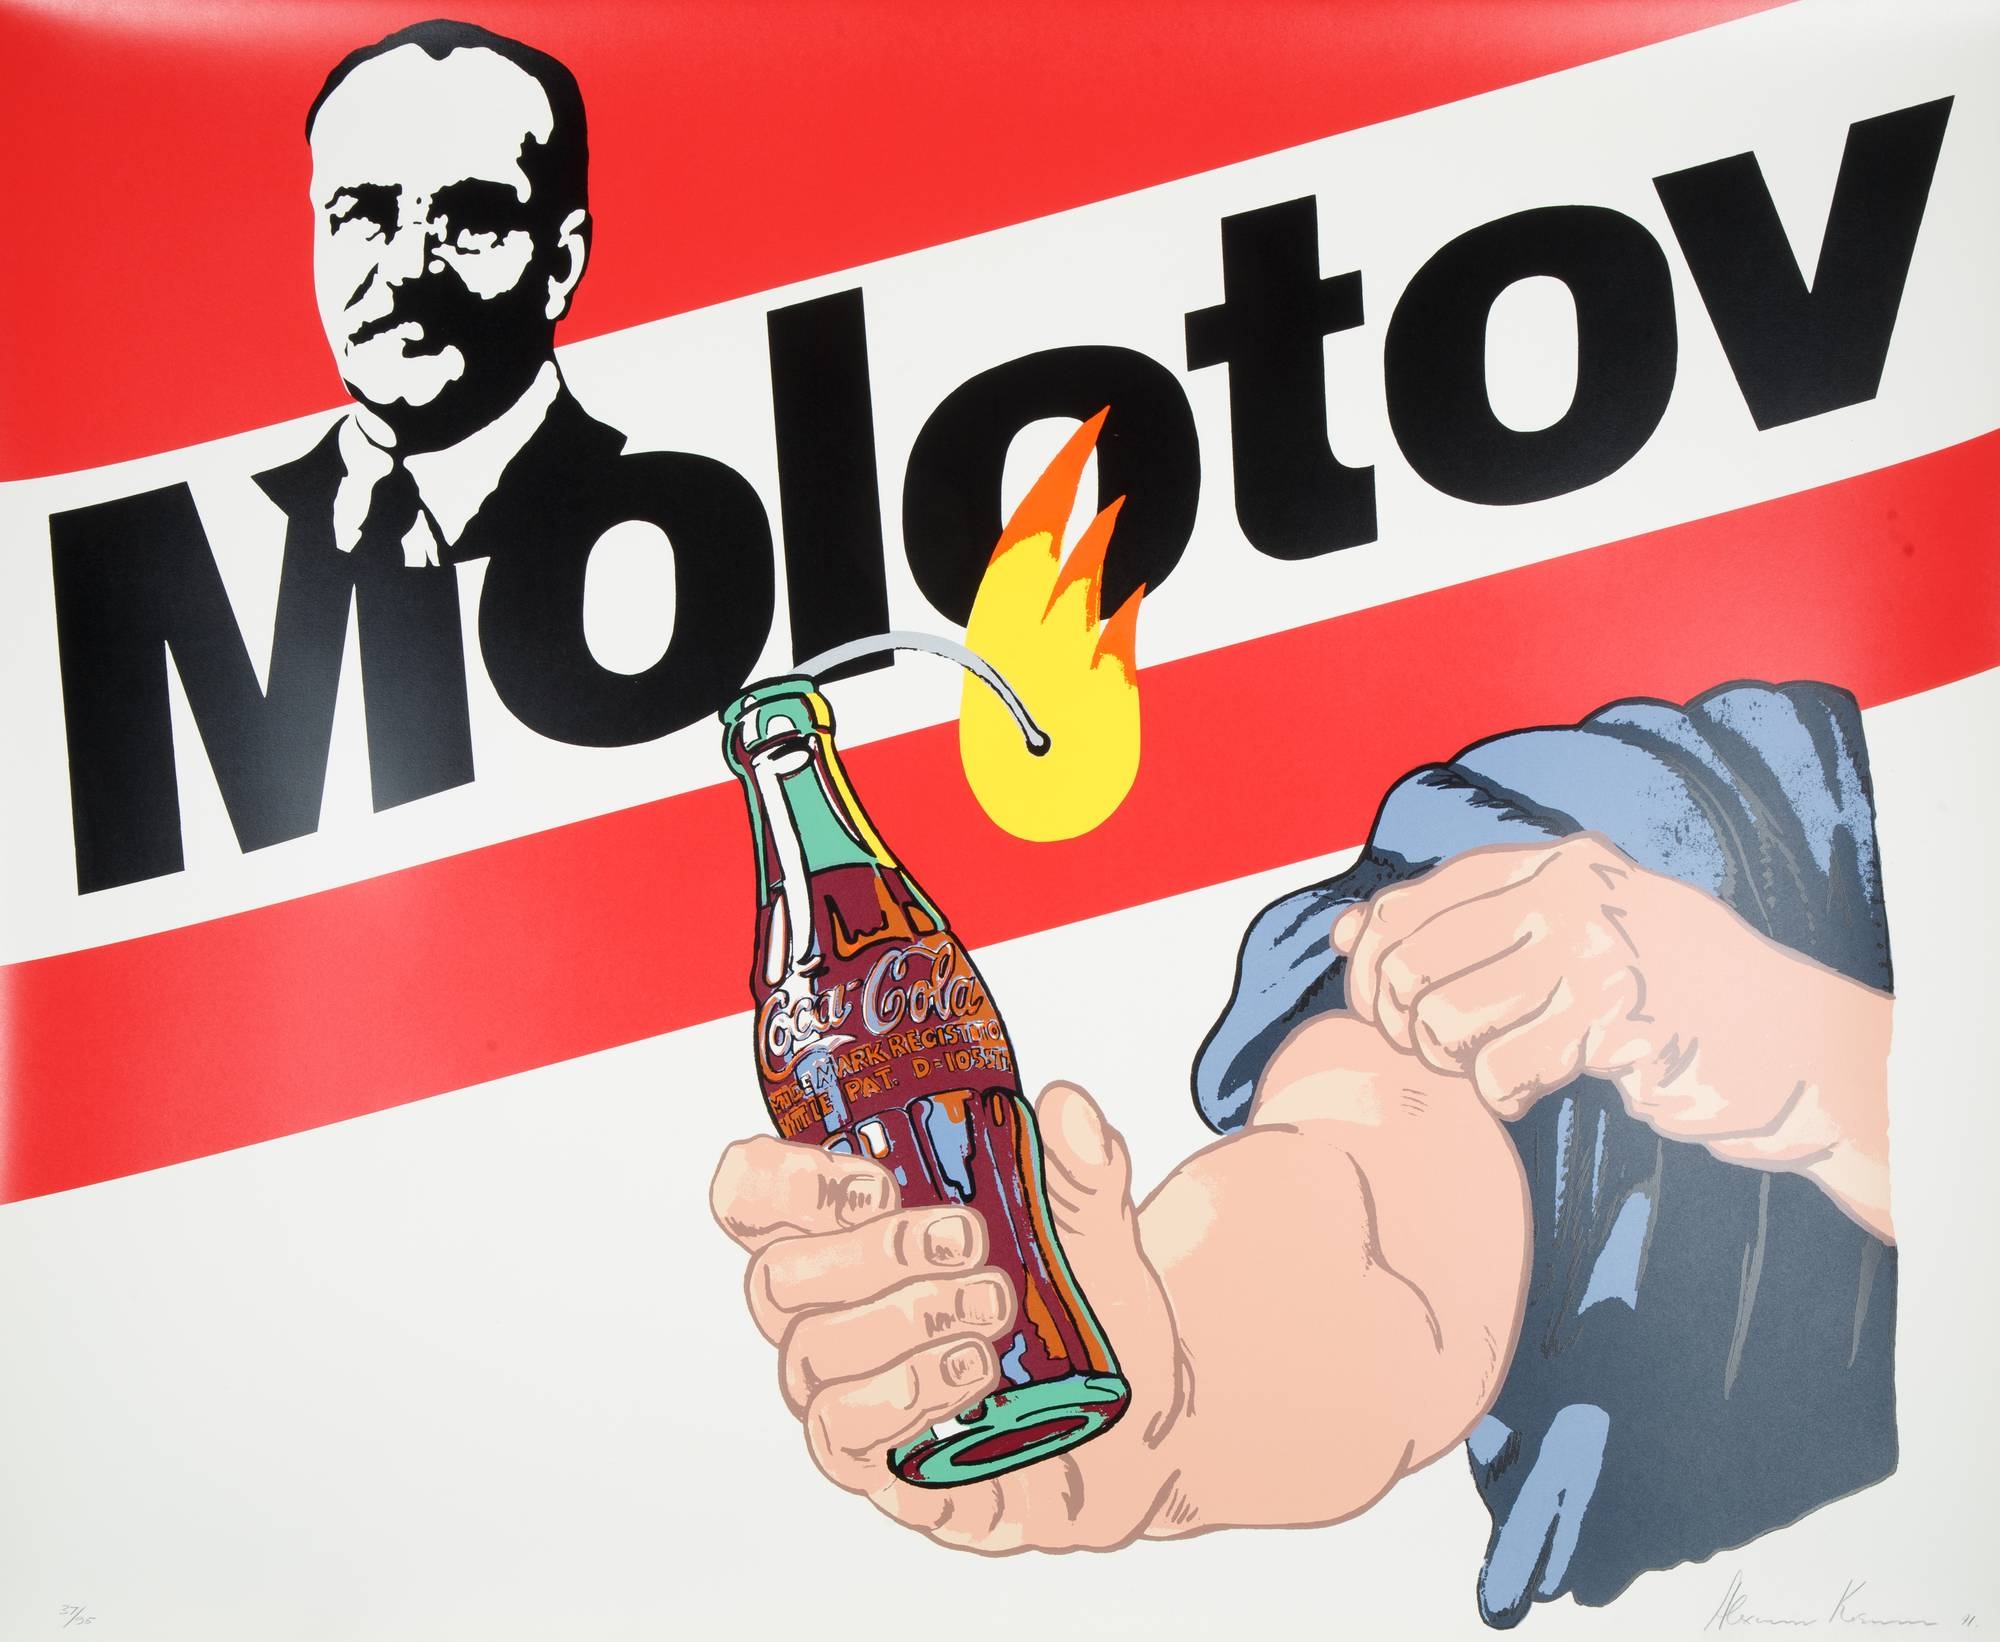 Molotov, 1991 by Alexander Kosolapov, 1991